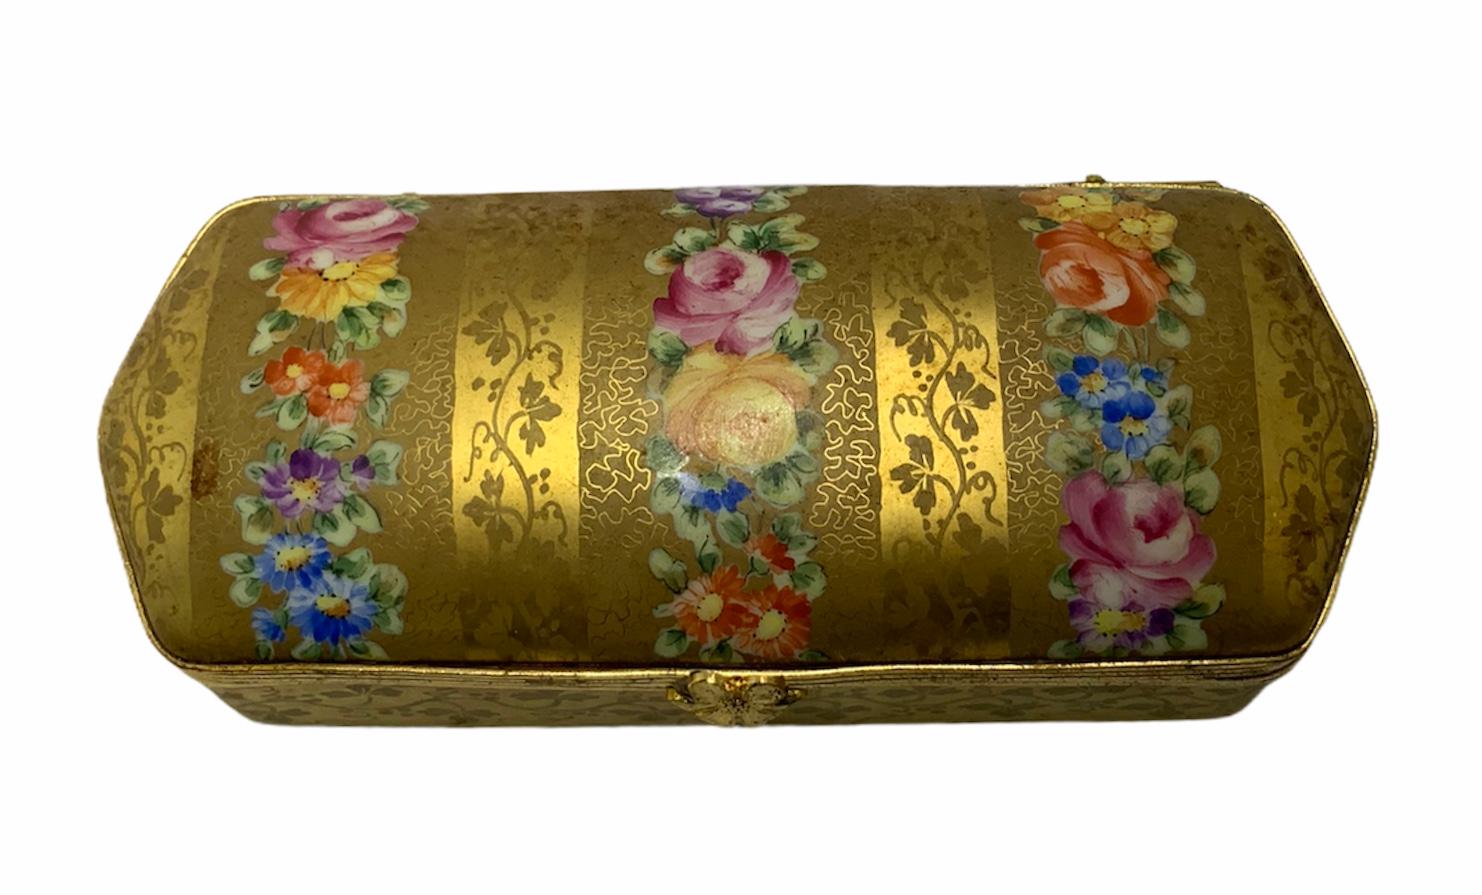 Dies ist eine vergoldete, handbemalte, längliche Scharnierbox. Sie ist mit einer Blumengirlande und einer Girlande aus Petersilienzweigen geschmückt. Auf der Innenseite des Deckels ist eine einzelne handgemalte Rose zu sehen. Diese Box eignet sich